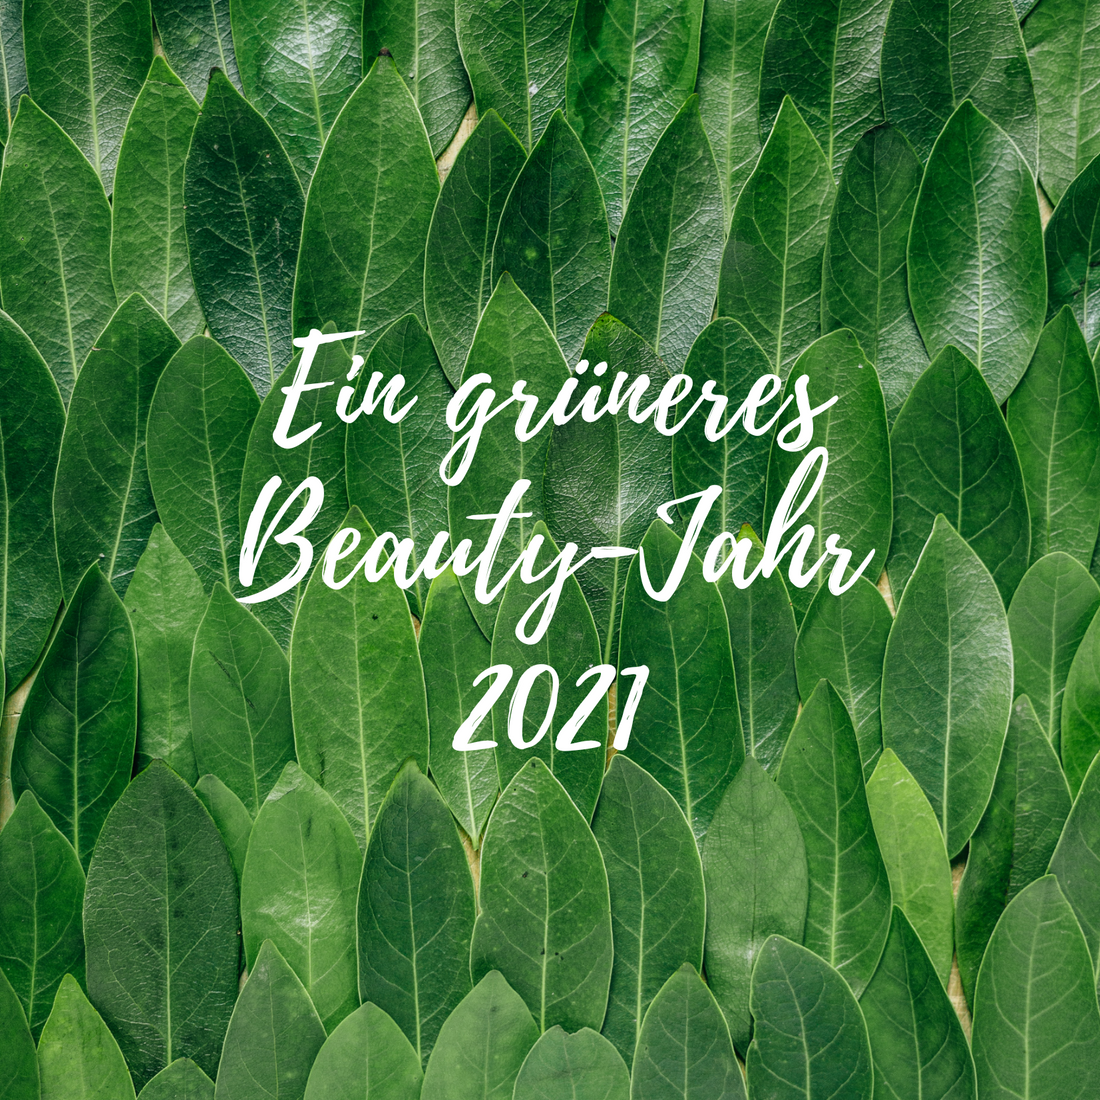 Ein grüneres Beauty-Jahr 2021